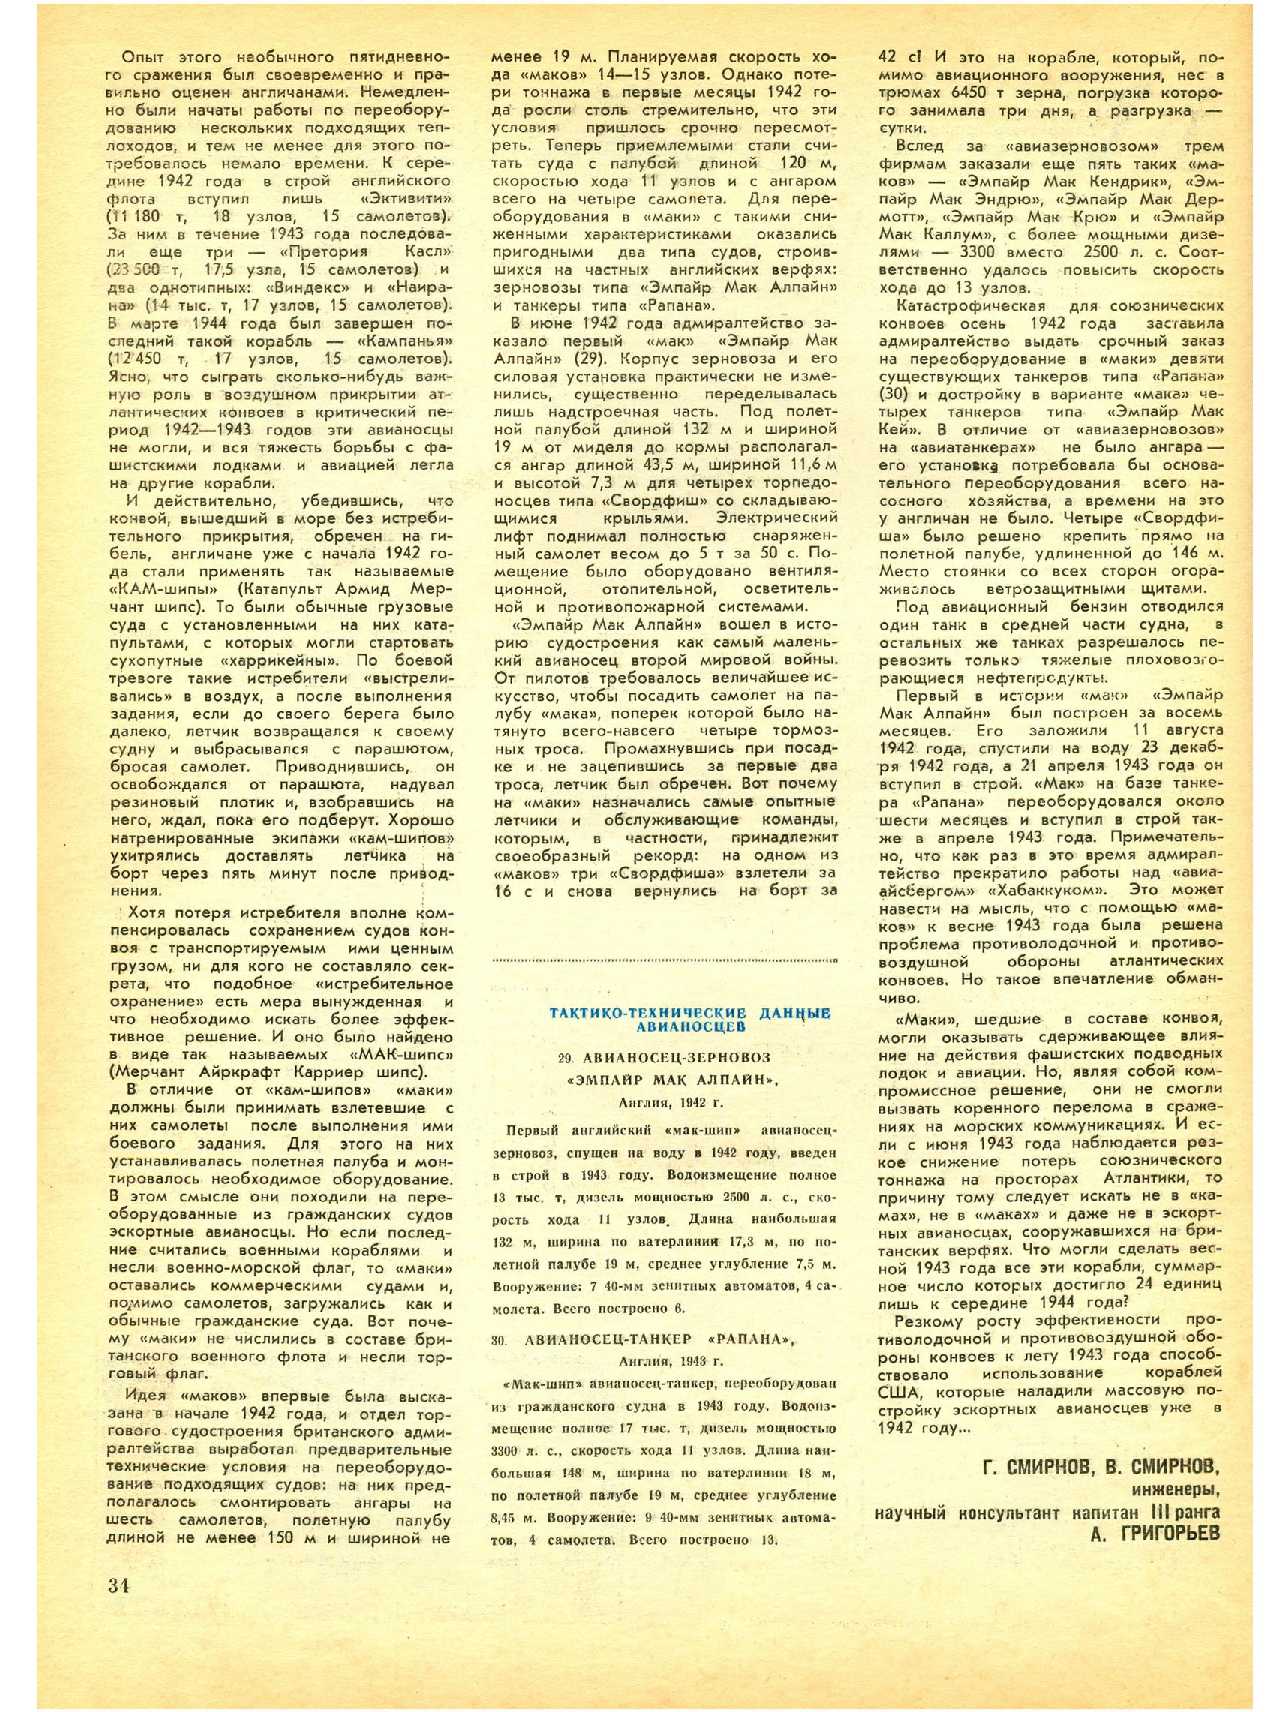 МК 11, 1982, 34 c.